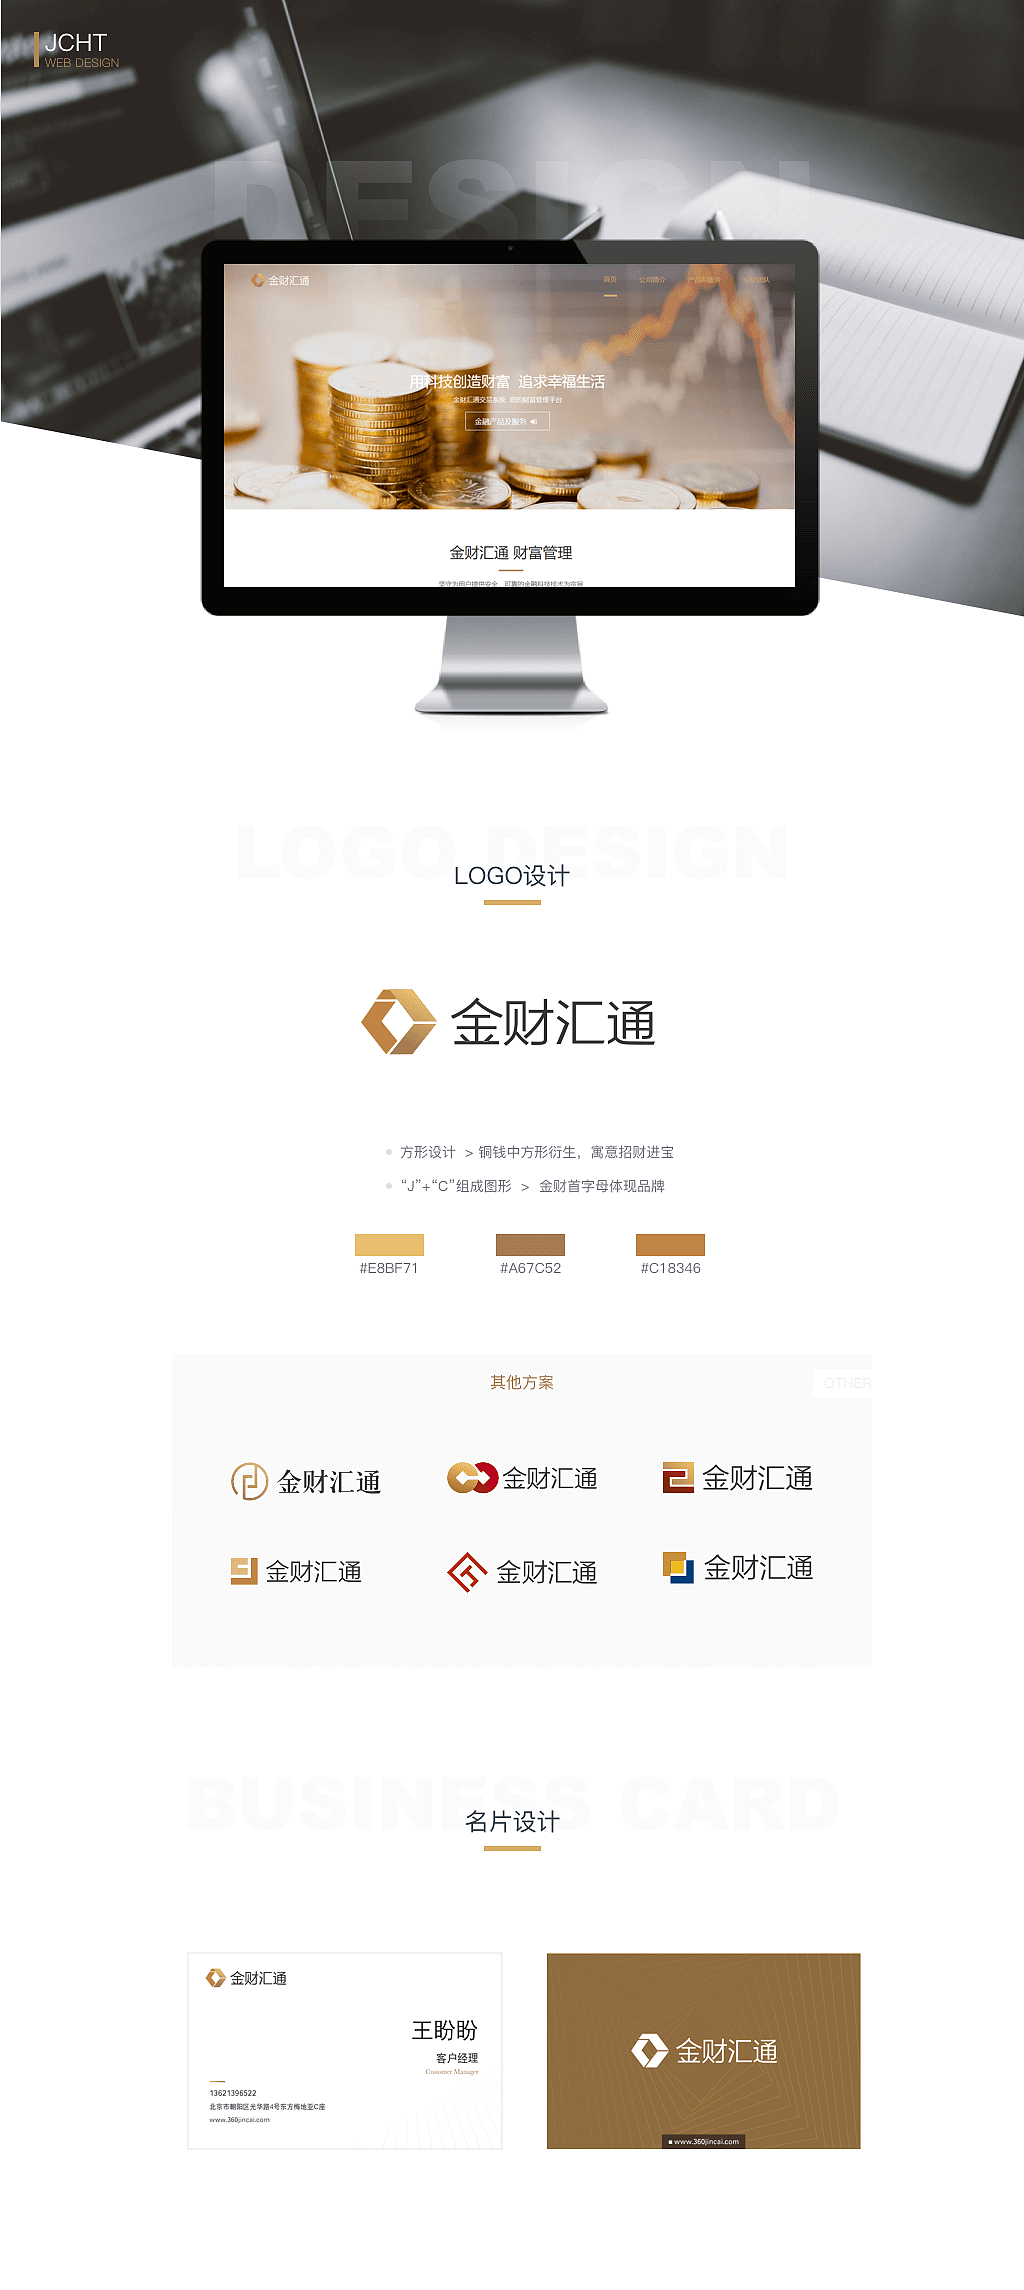 投资管理公司LOGO&Web设计